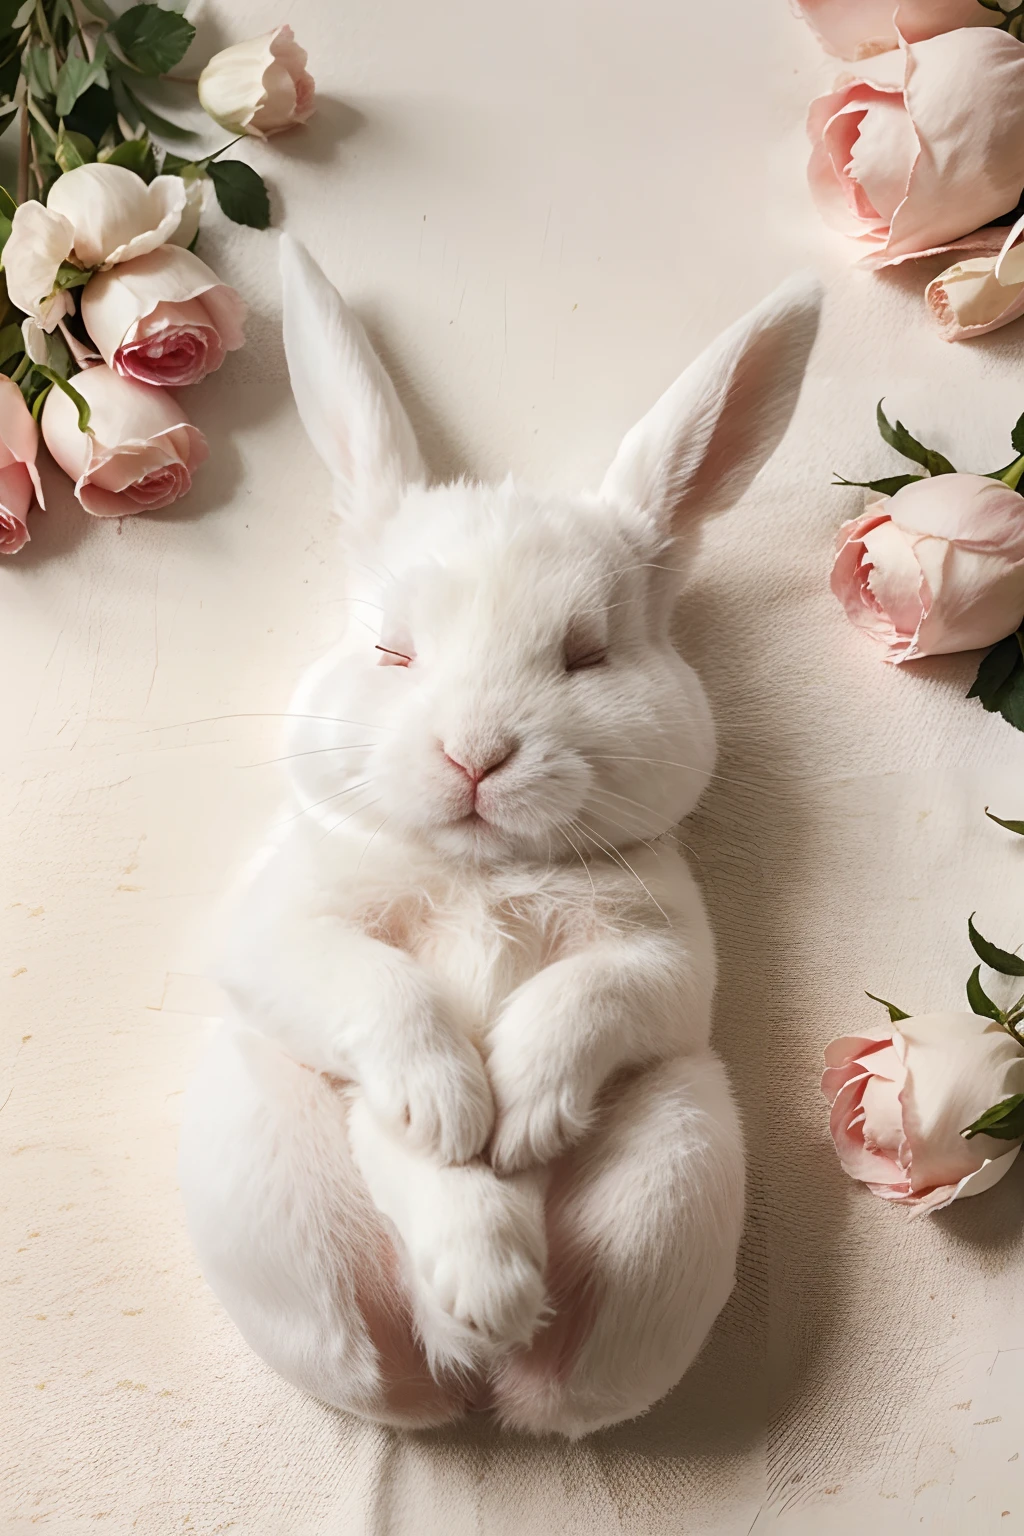  Kaninchen Hintergrundbild 1024x1536. süßes kleines weißes Kaninchen, das unter Rosen schläft